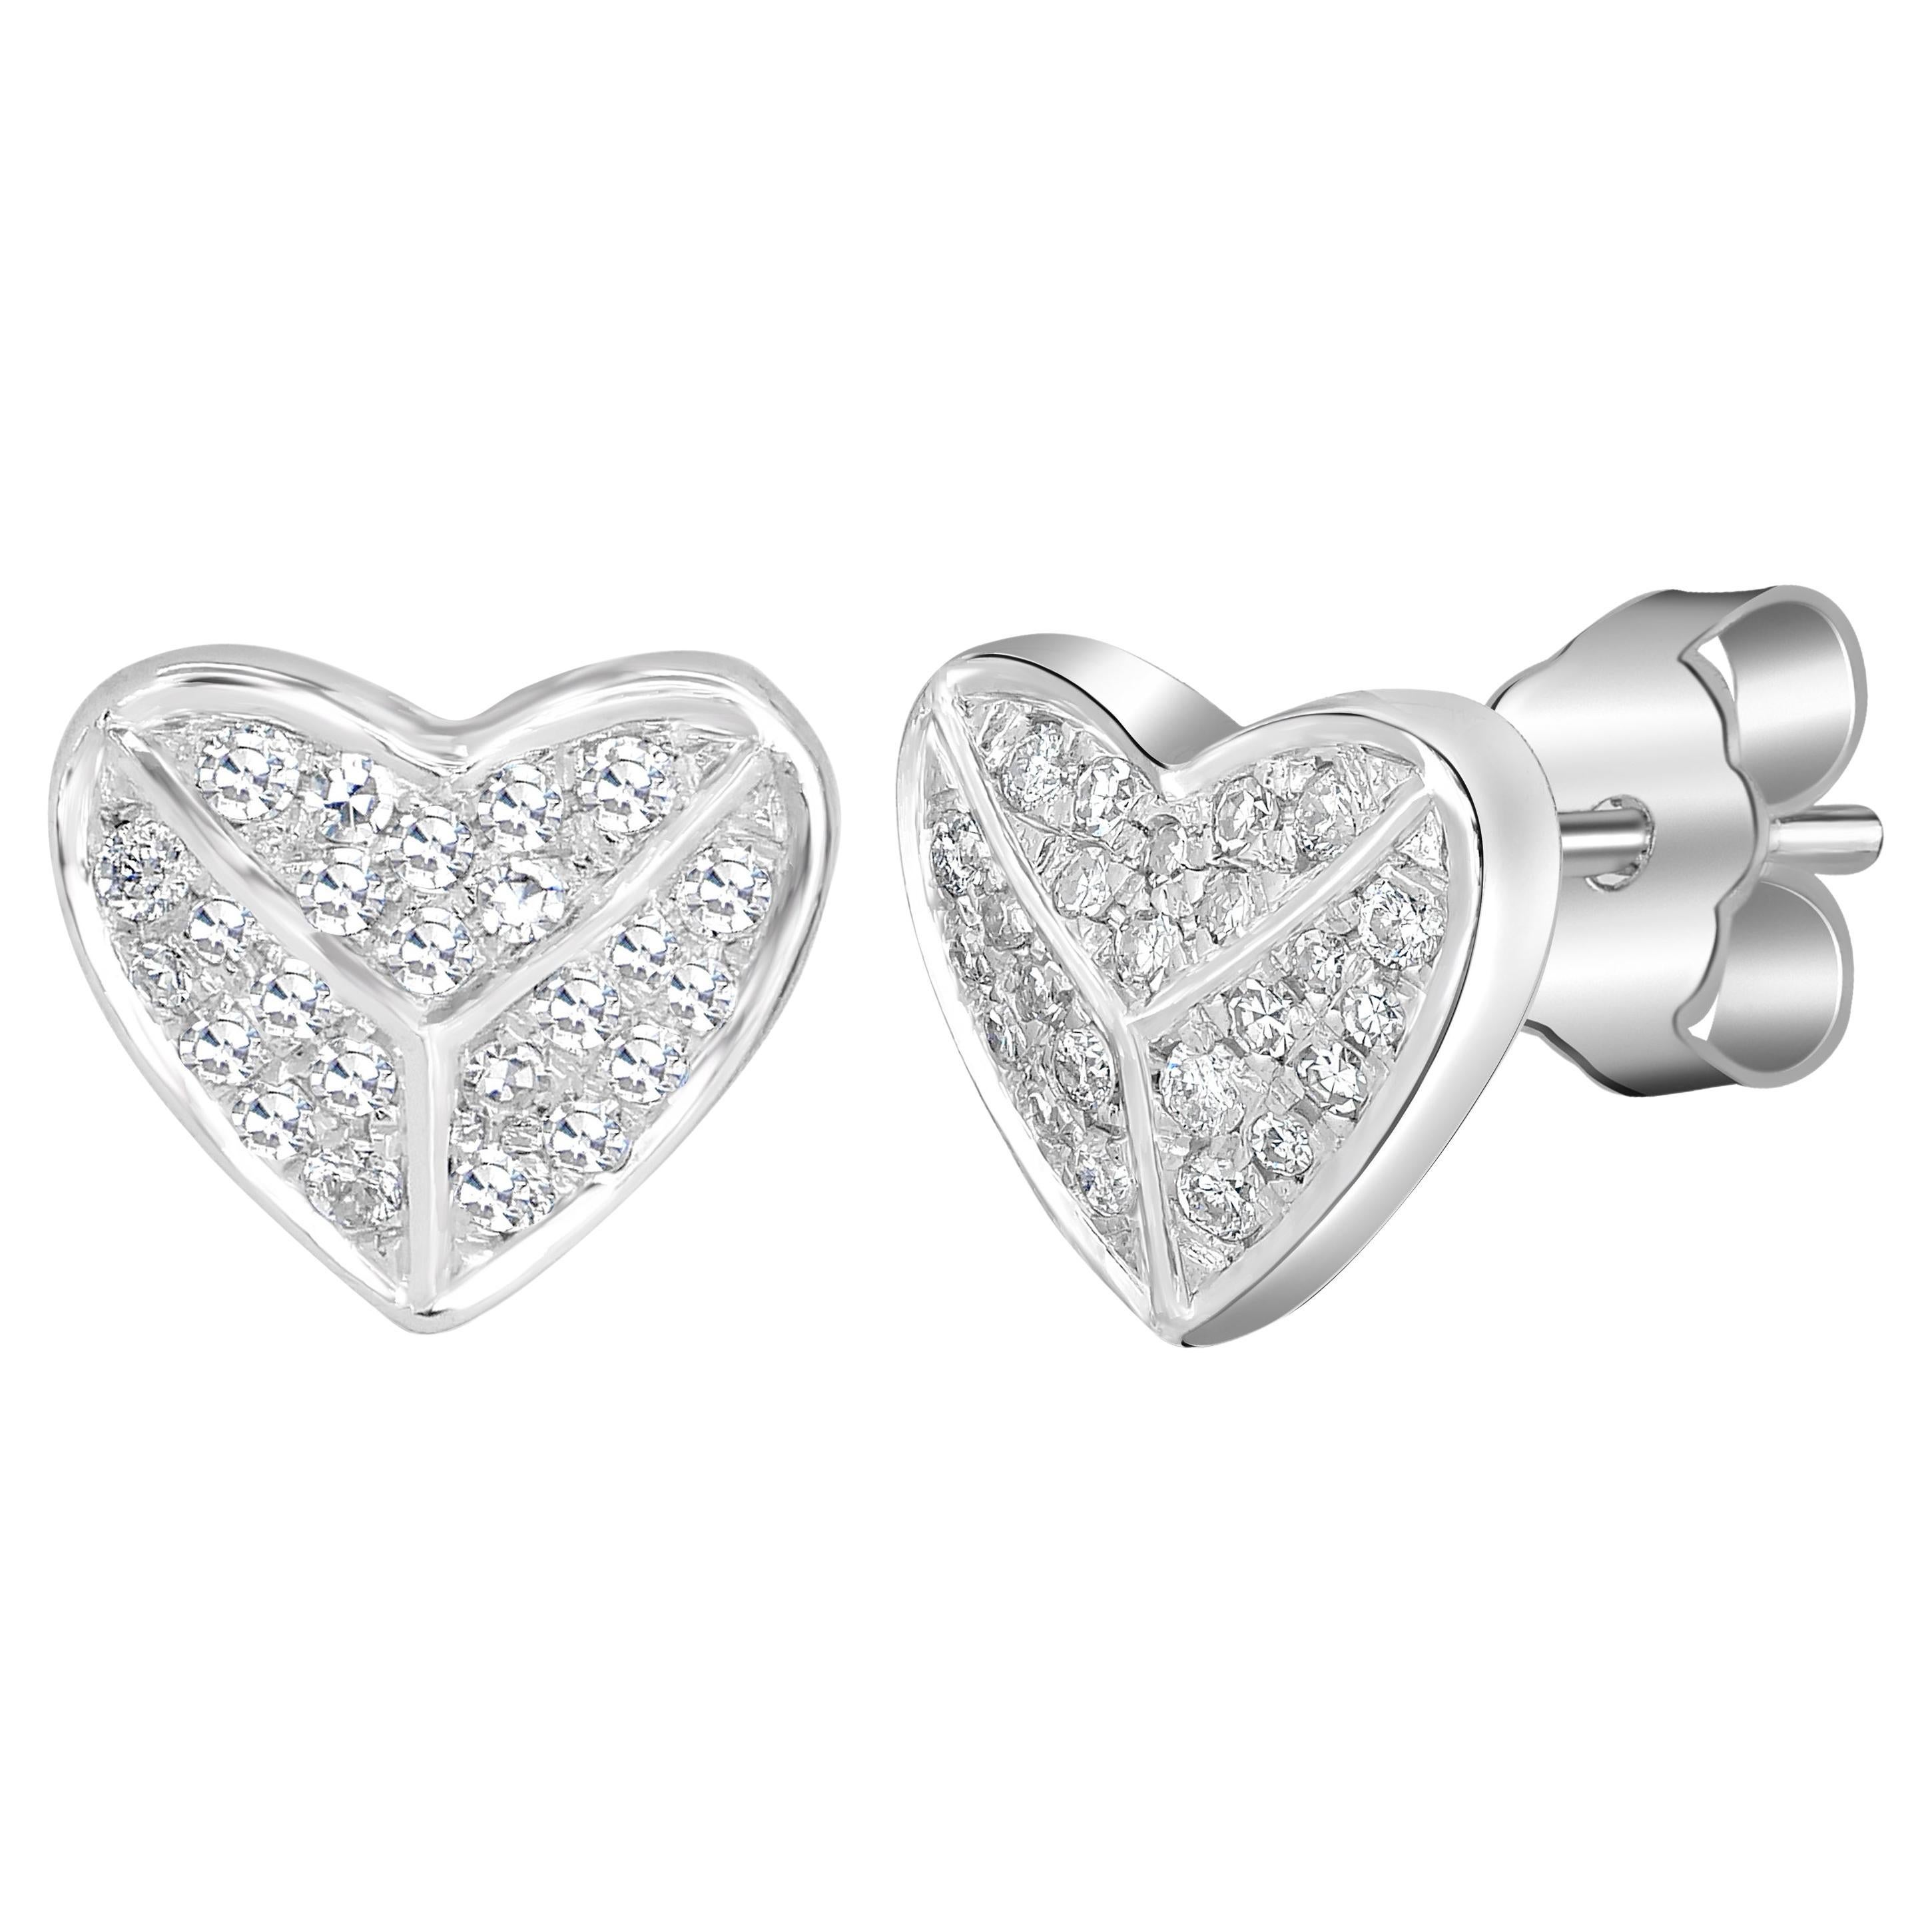 Luxle 14k White Gold Diamond Heart Stud Earrings